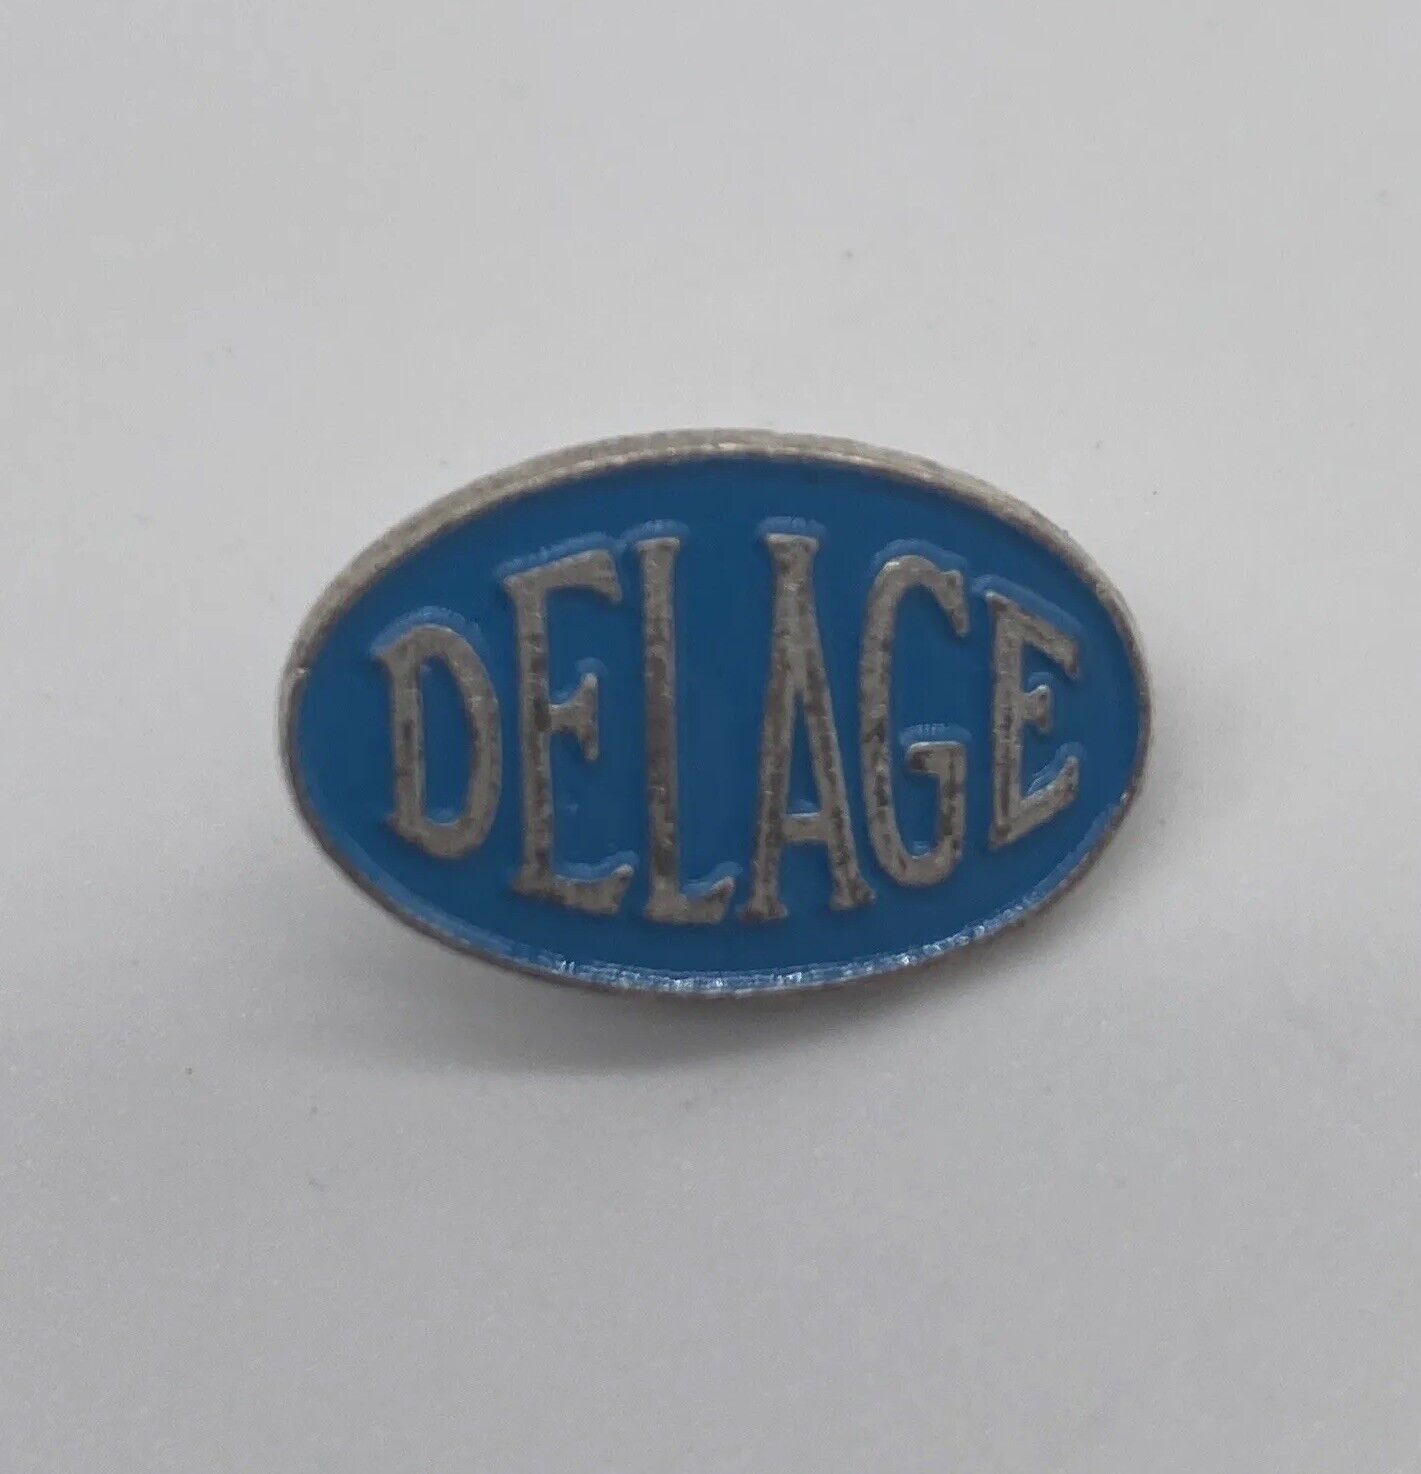 Vintage Delage Logo Emblem Car Automotive Lapel Hat Pin